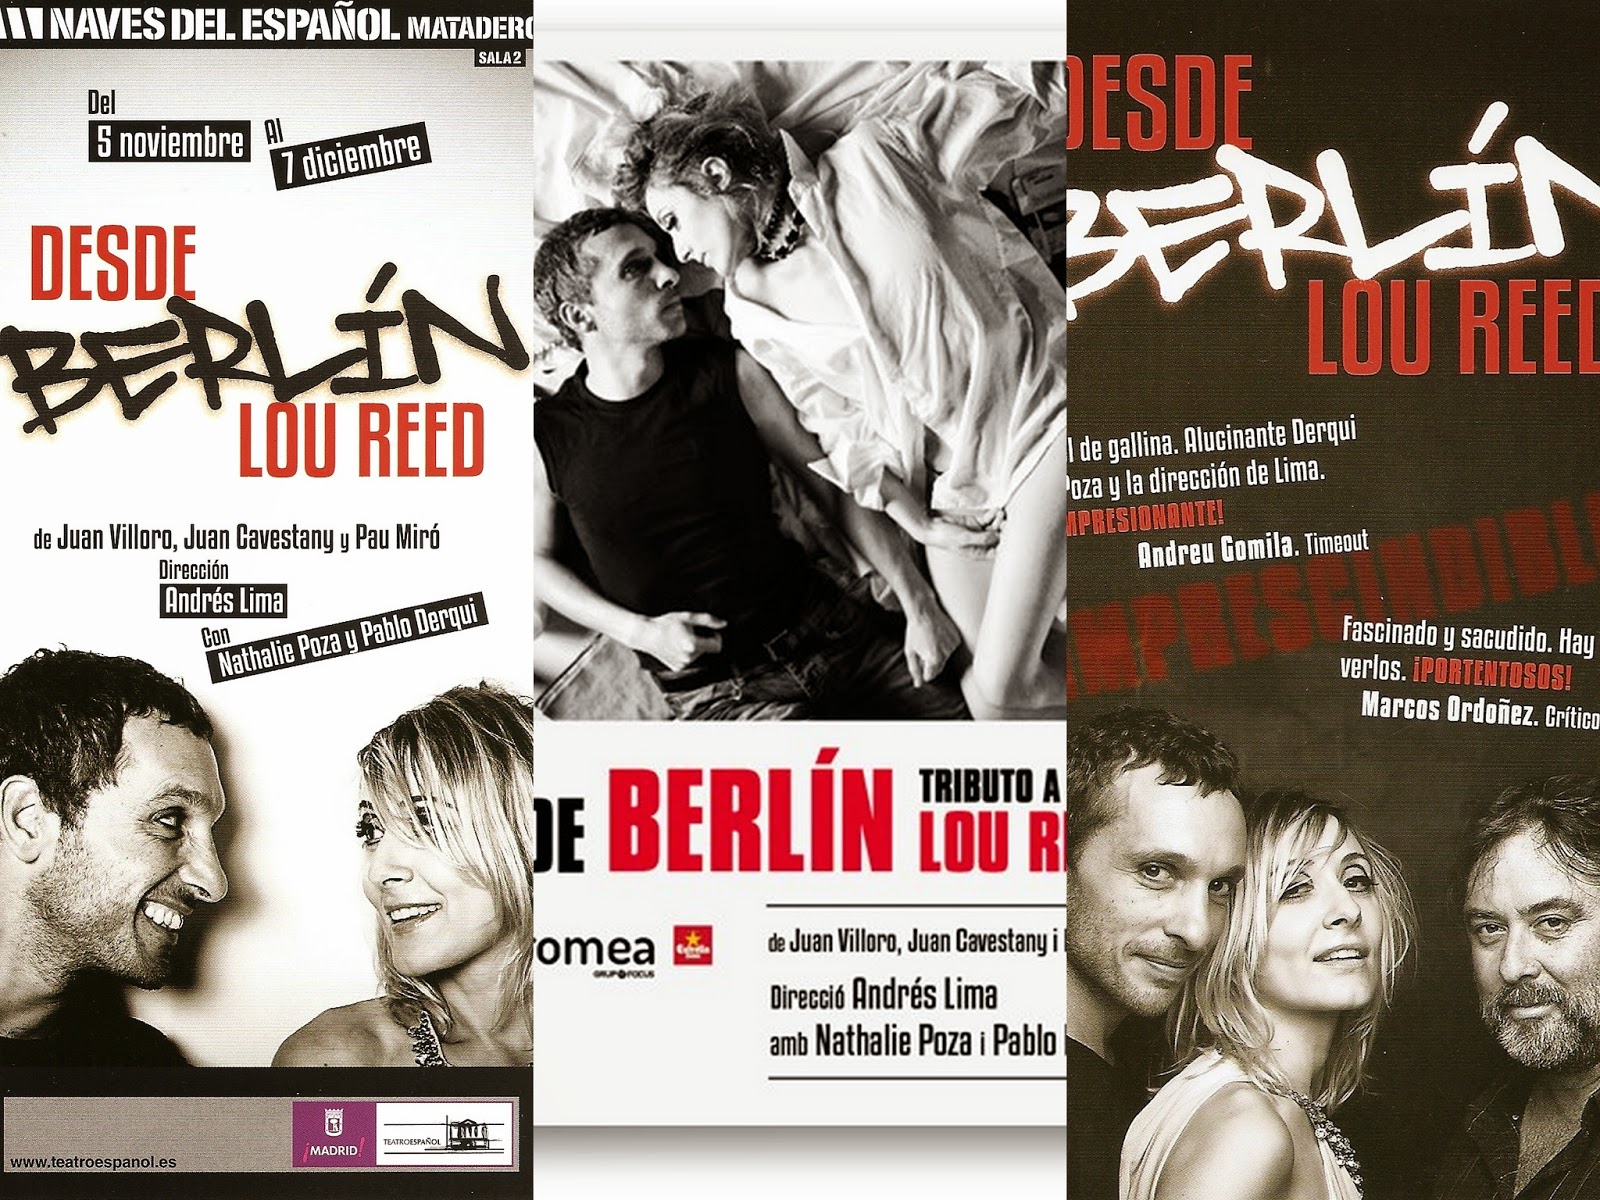 Lou Reed, "Berlín", "Desde Berlín. Tributo a Lou Reed"